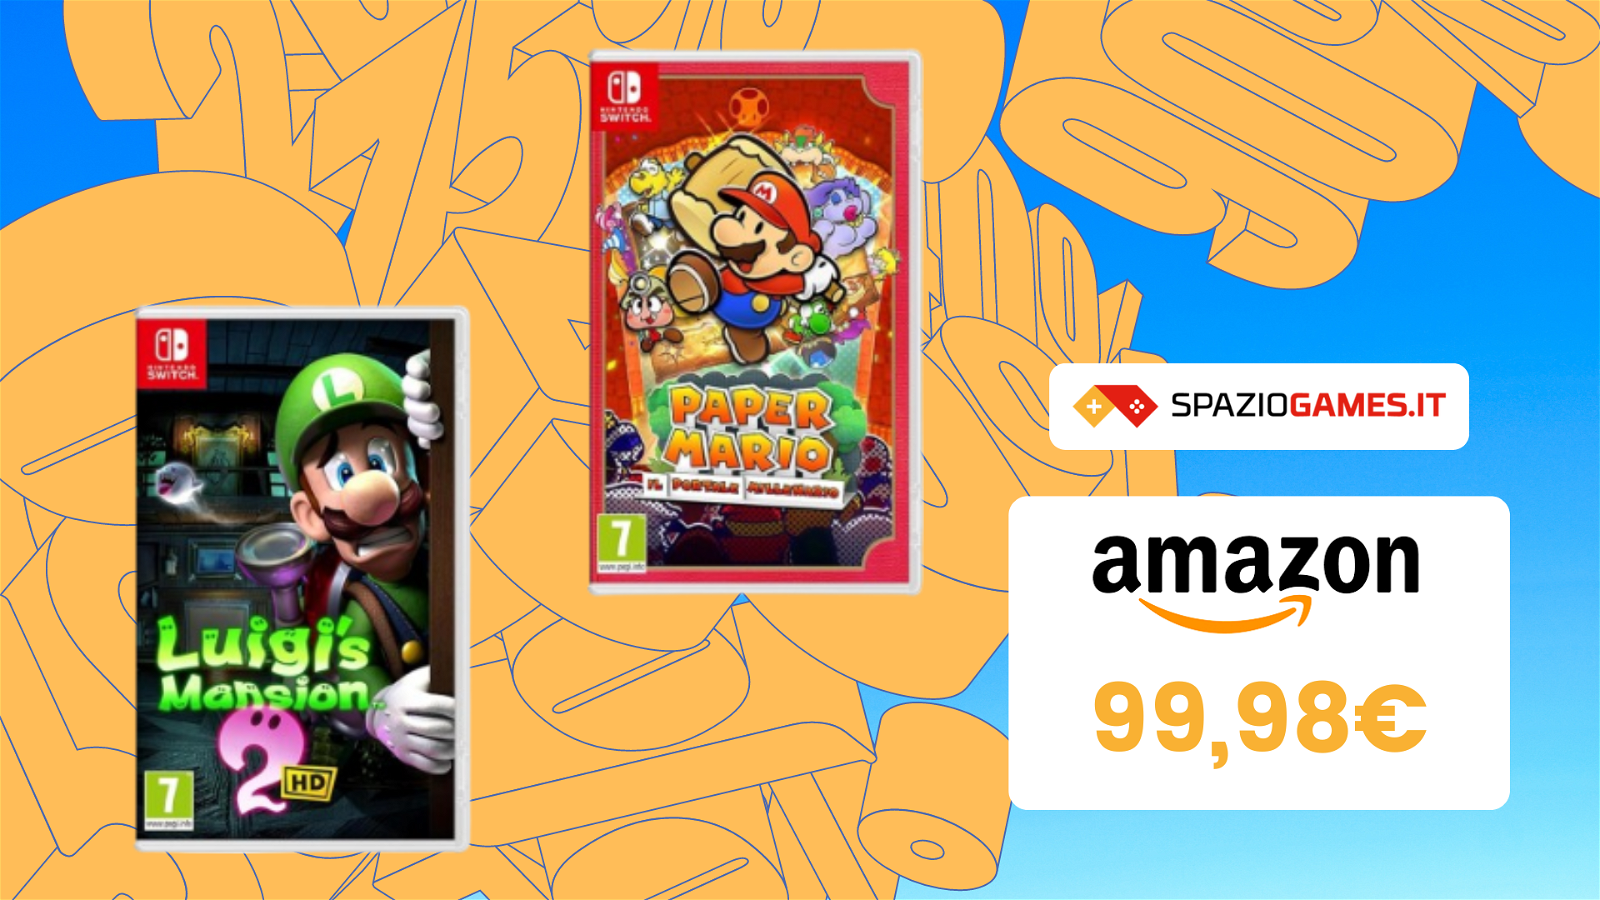 WOW! Bundle Paper Mario + Luigi’s Mansion 2HD a soli 99,98€!